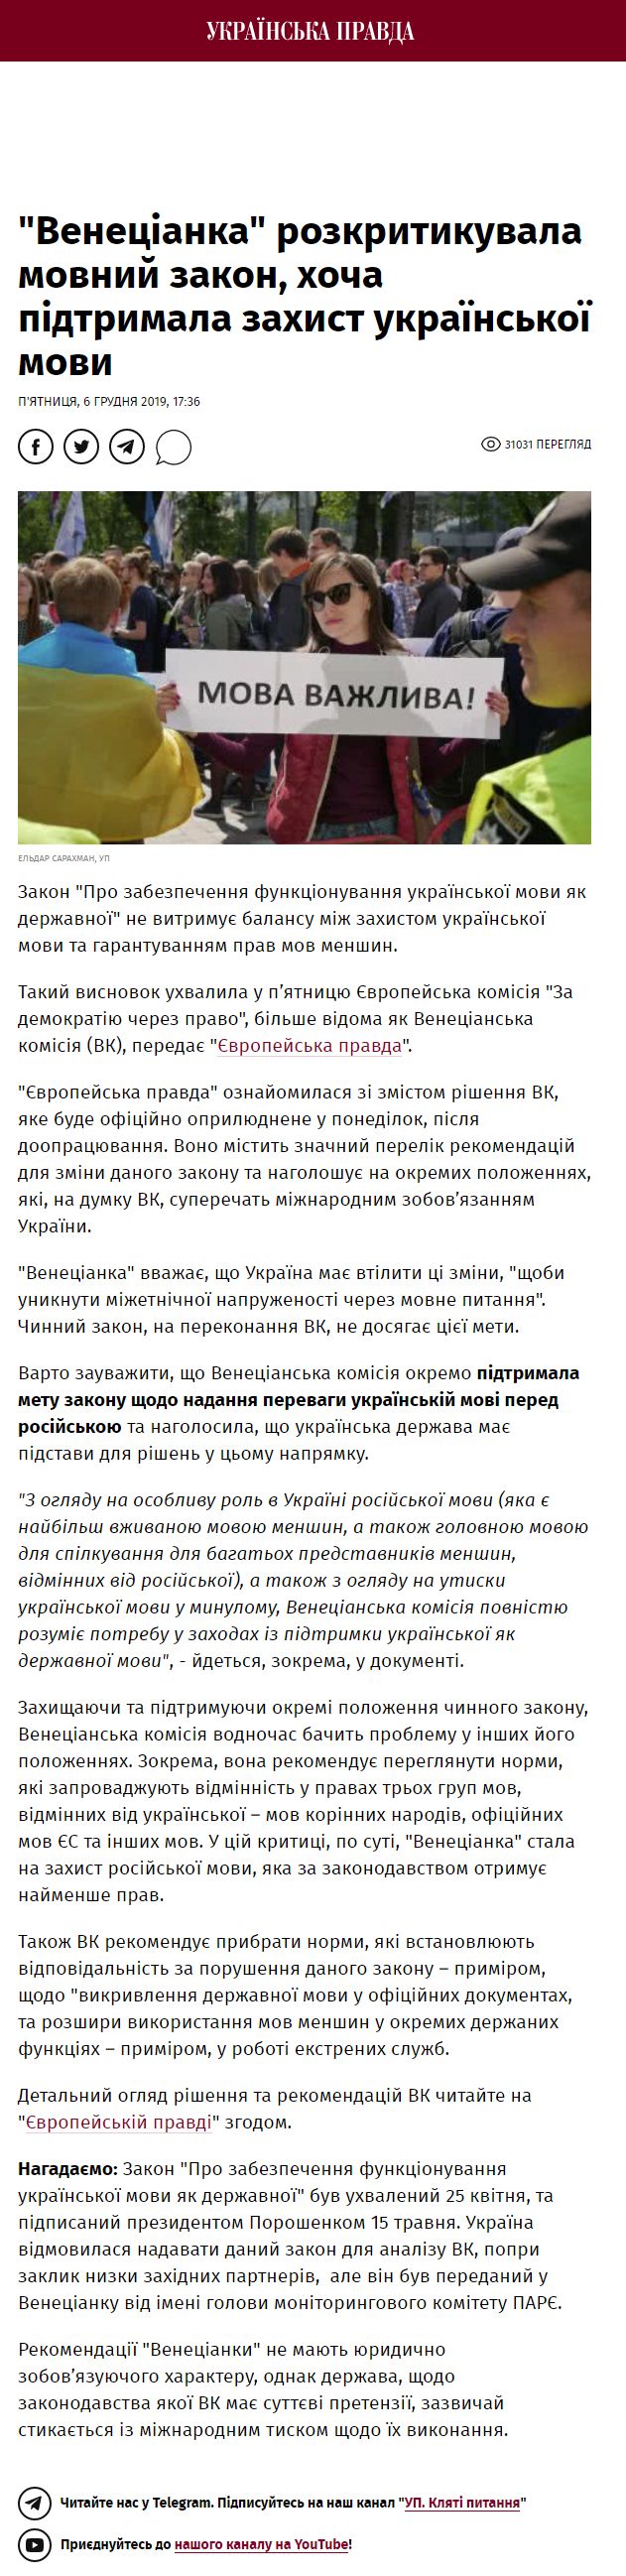 https://www.pravda.com.ua/news/2019/12/6/7234104/